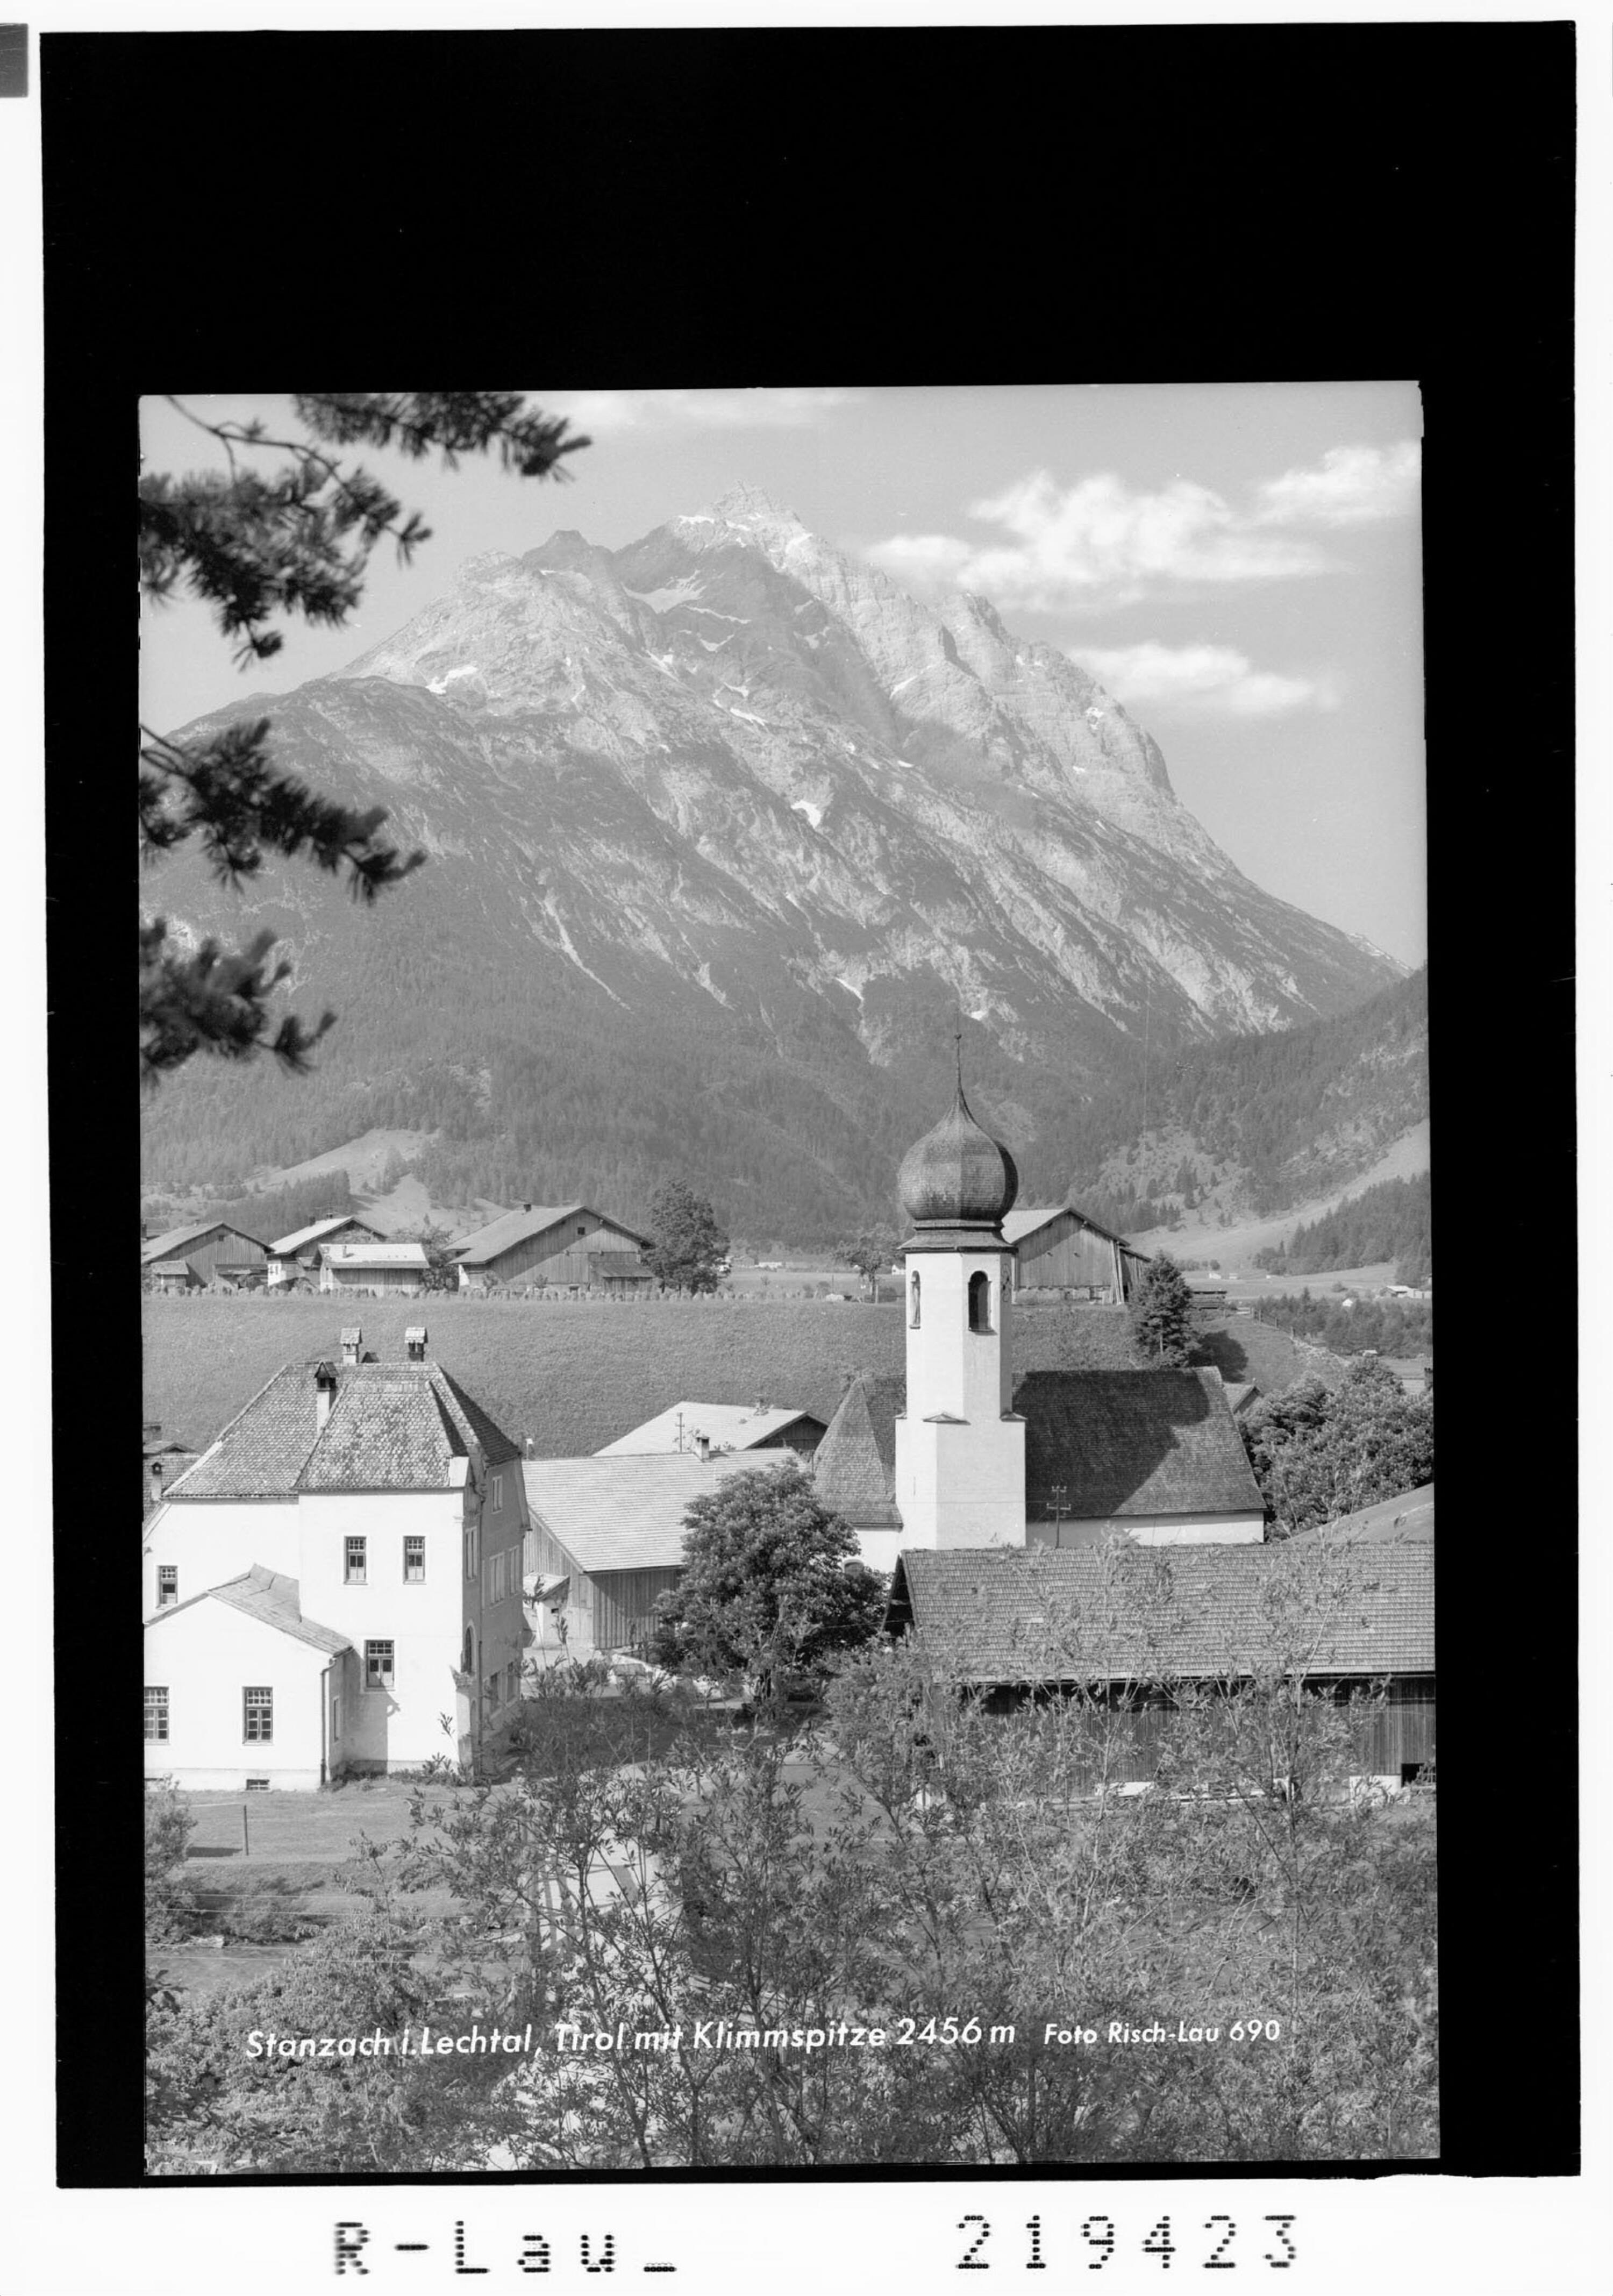 Stanzach im Lechtal / Tirol mit Klimmspitze 2456 m></div>


    <hr>
    <div class=